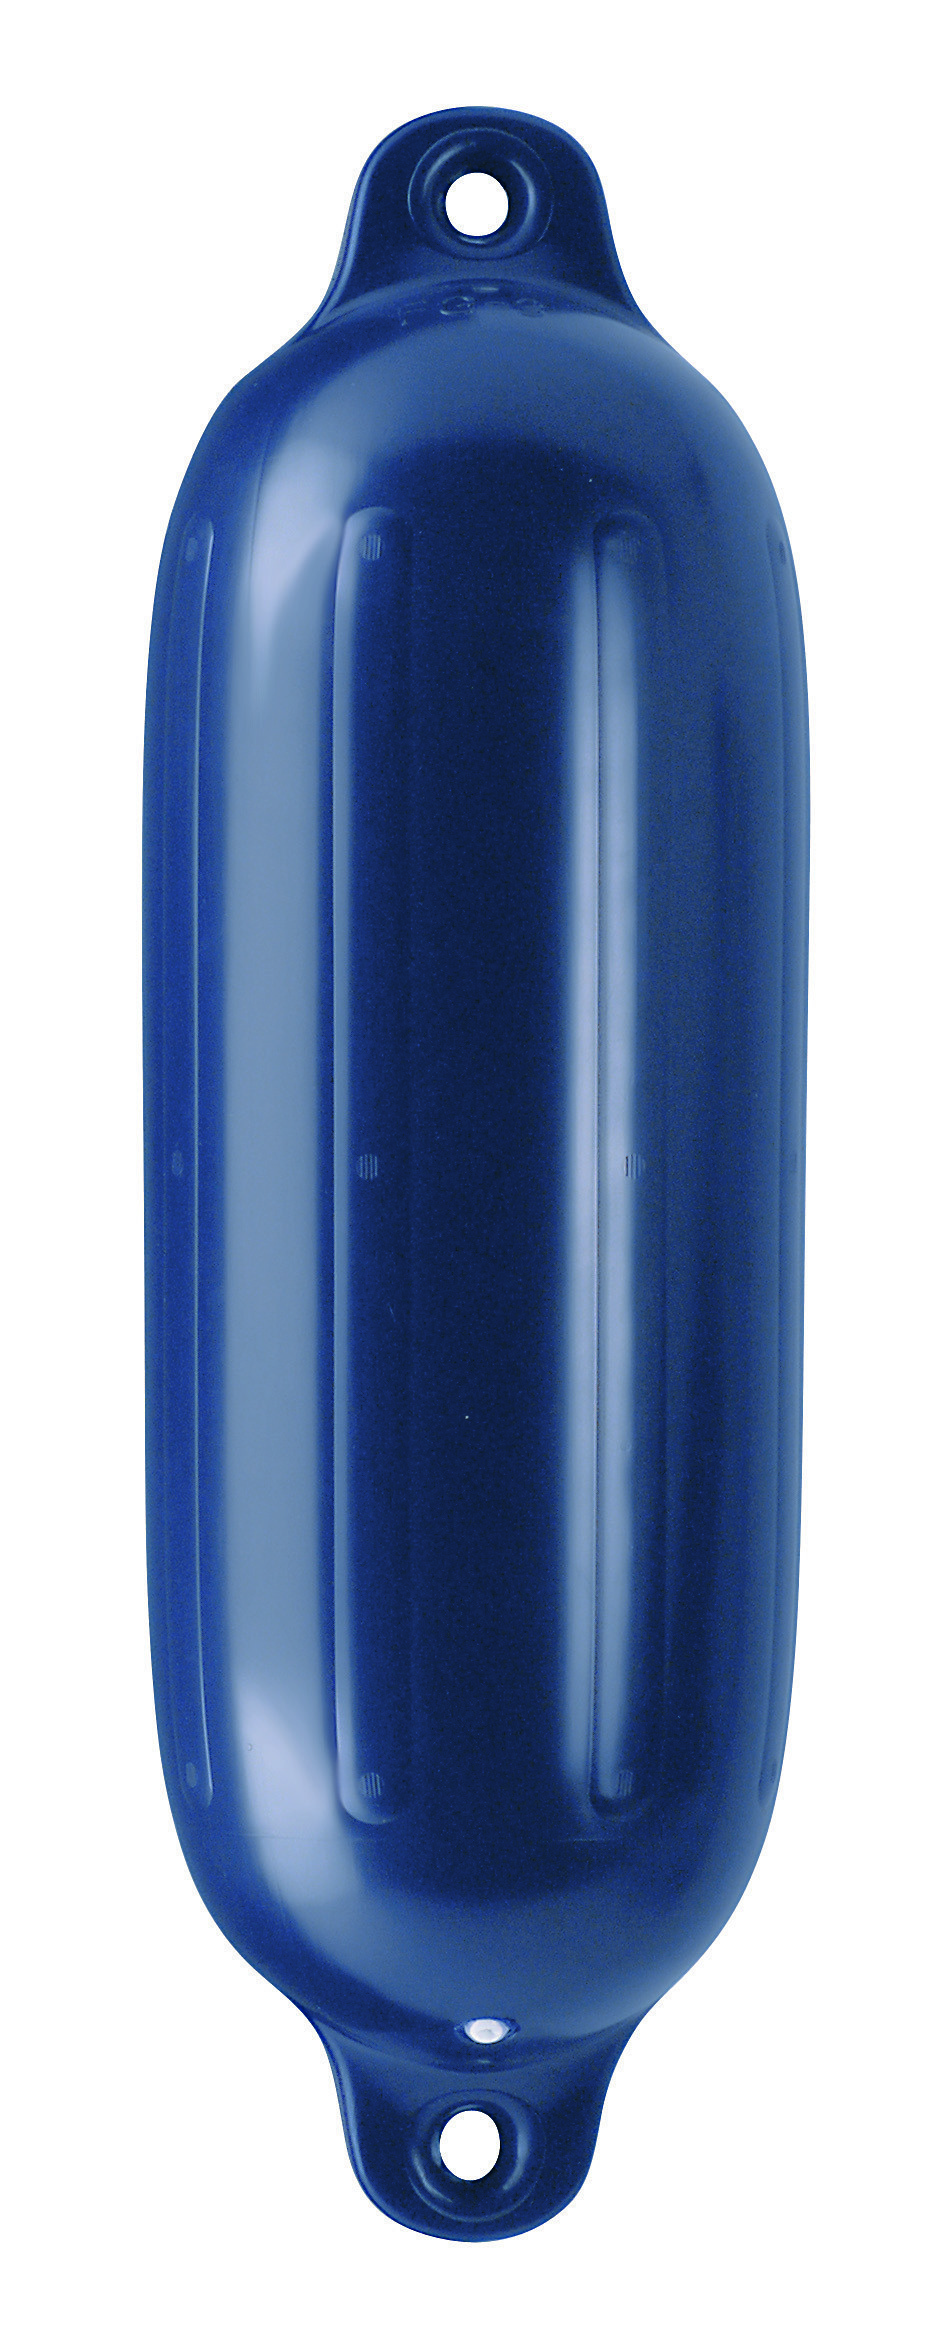 23.21 - Μπαλόνι POLYFORM Με Διπλό Μάτι Σειρά G Χρώματος Μπλε 14.5x51.5cm